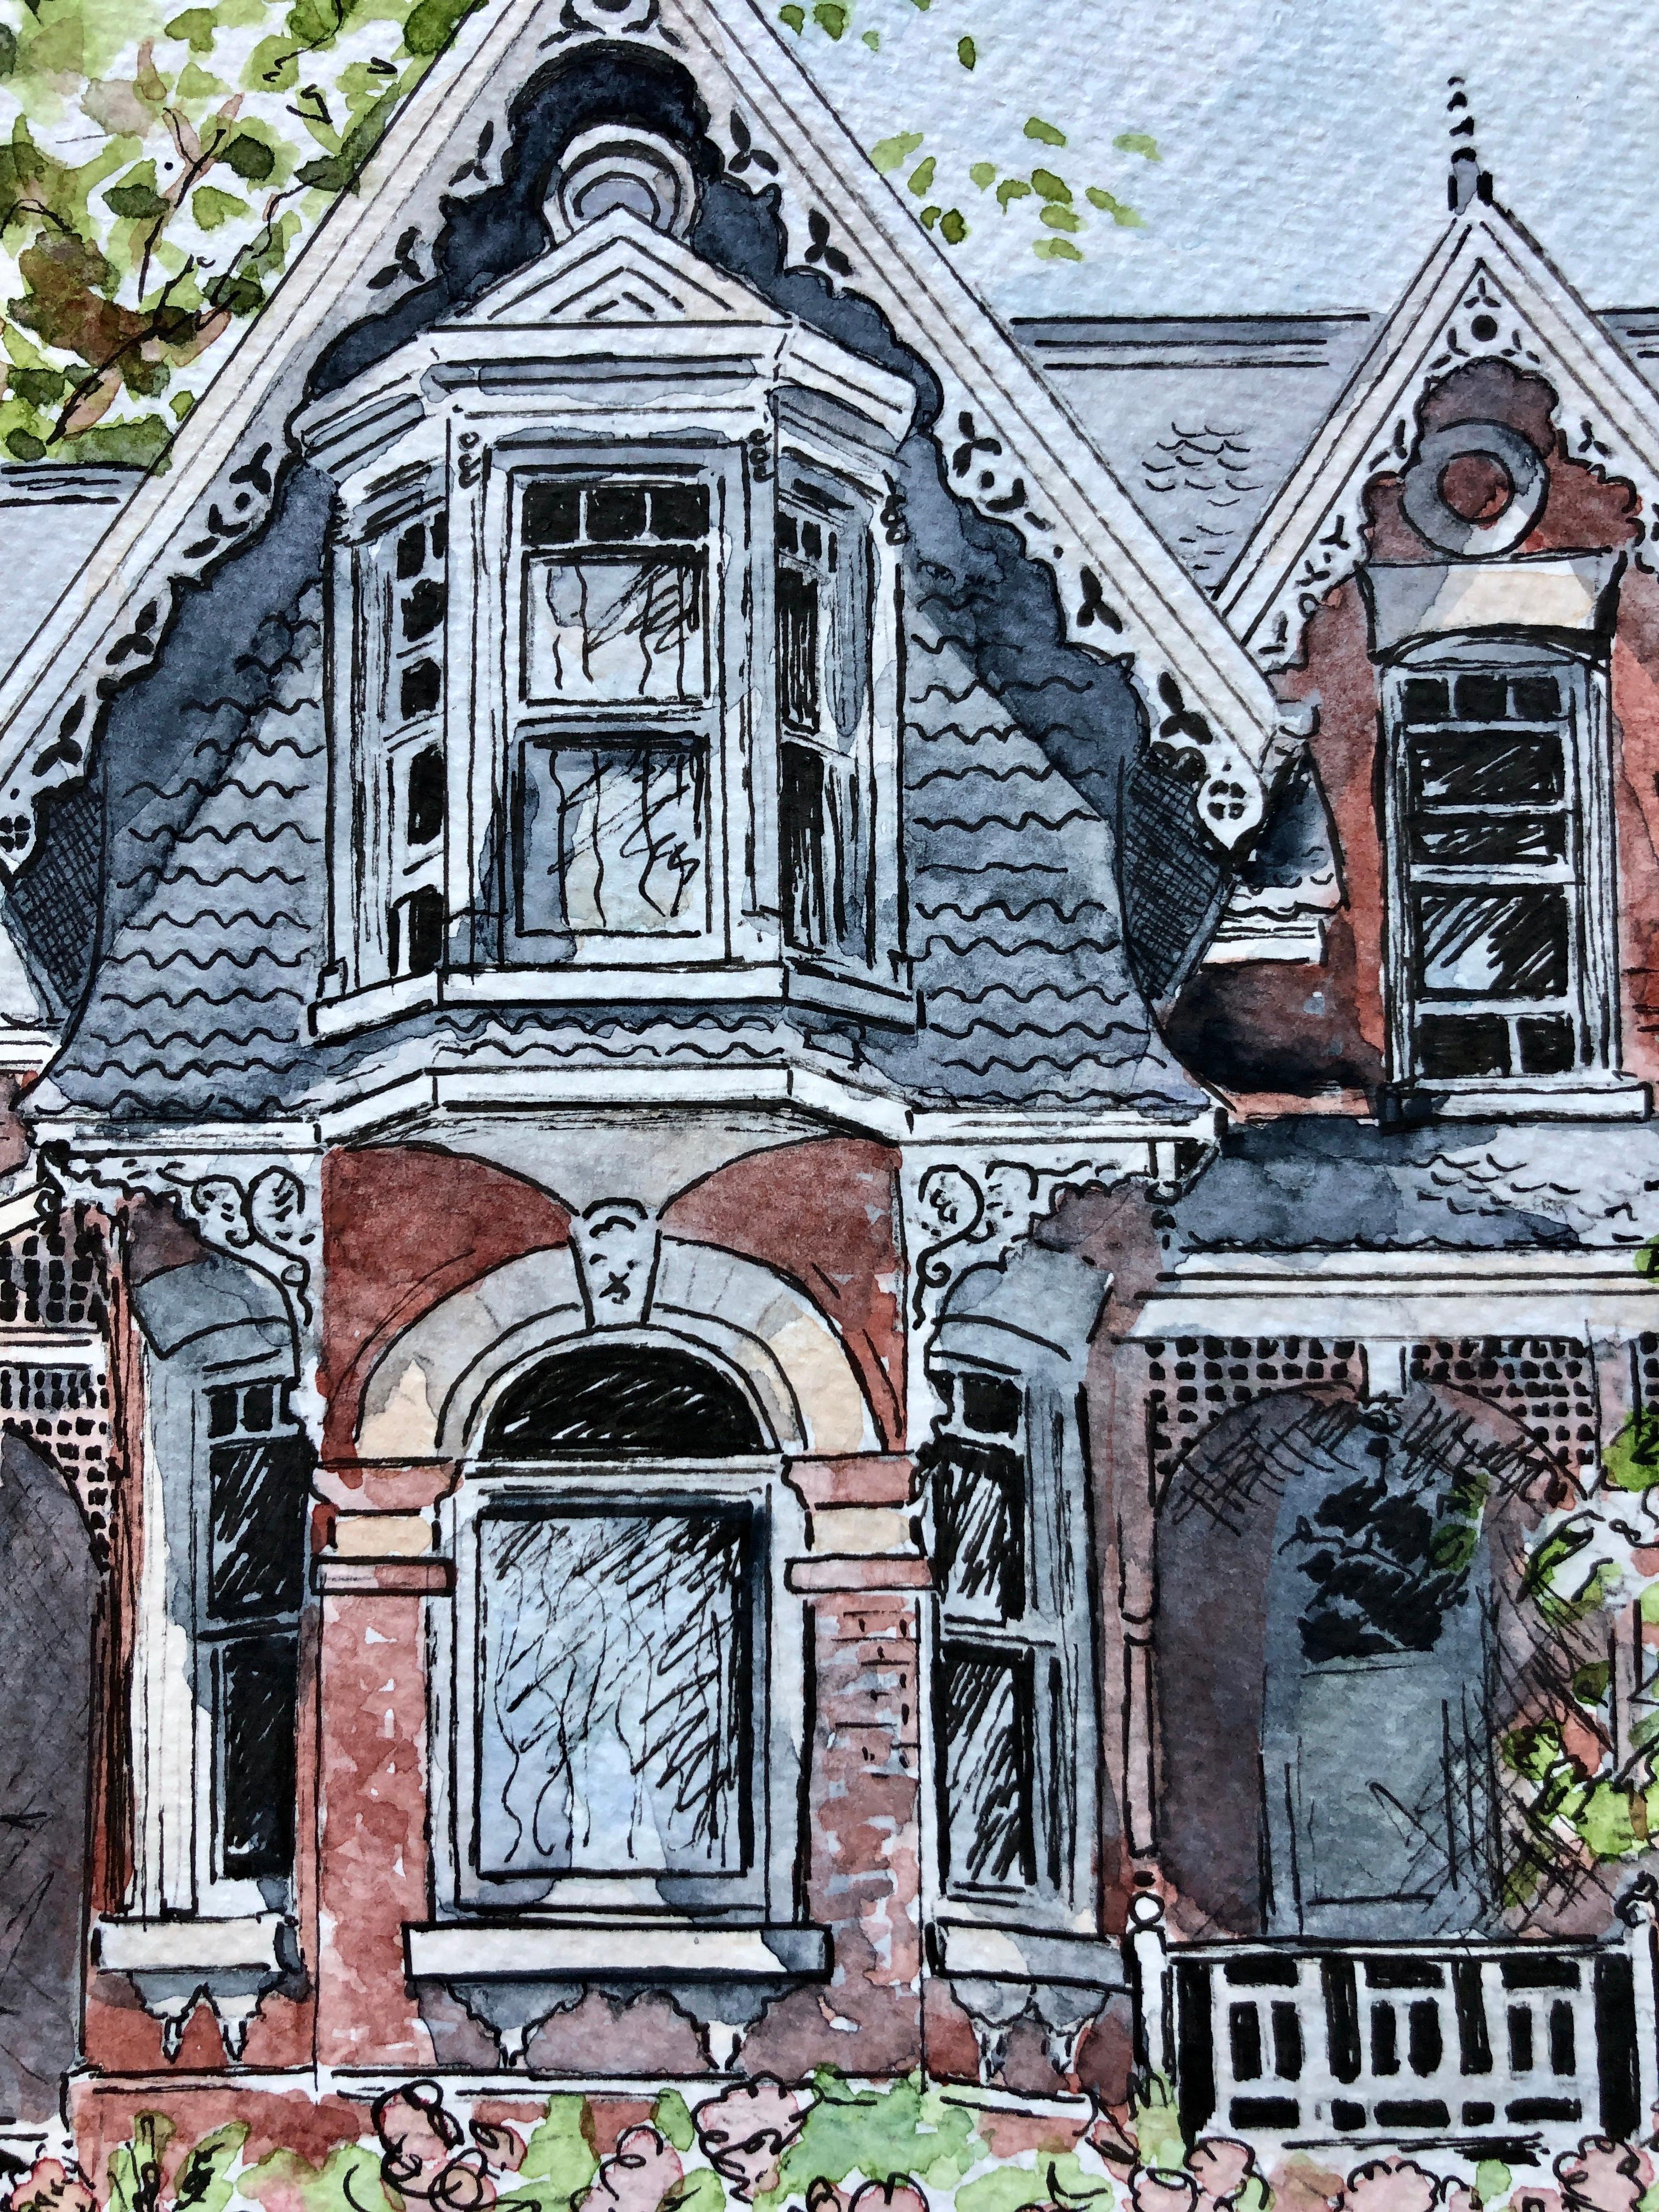 <p>Kommentare des Künstlers<br>Der Künstler Maurice Dionne zeigt ein eingezäuntes Haus im viktorianischen Stil mit einem blühenden Garten. Teil seiner Random-House-Serie, in der er die verschiedenen architektonischen Entwürfe vorstellt, denen er